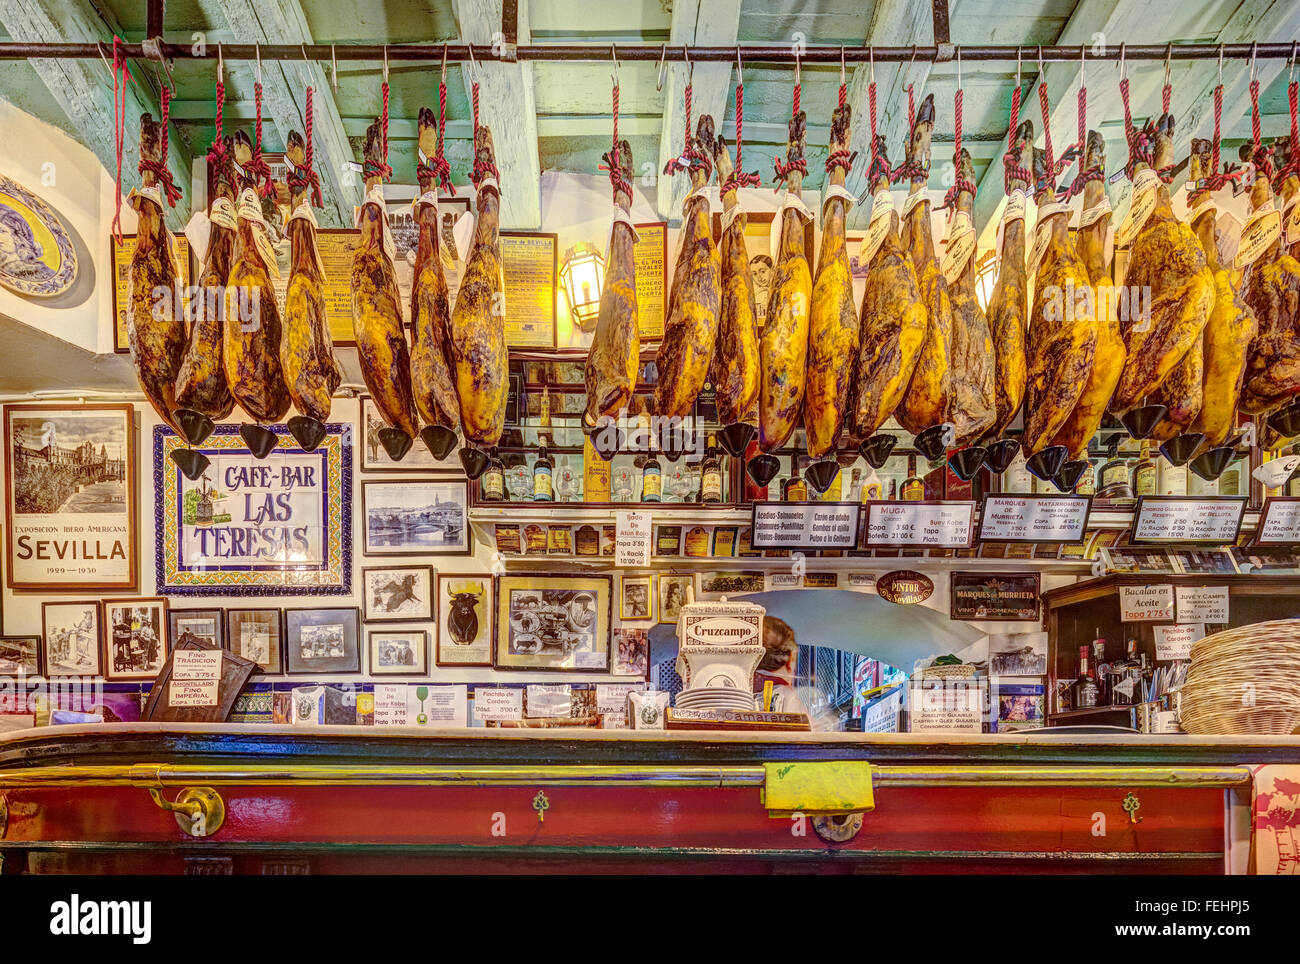 Las Teresas Tapas Bar-Restaurant in Sevilla-Sevilla Spanien. Iberico Schinken Jamon de Bellota von Eichel Schweine gefüttert hängen von Decke Stockfoto